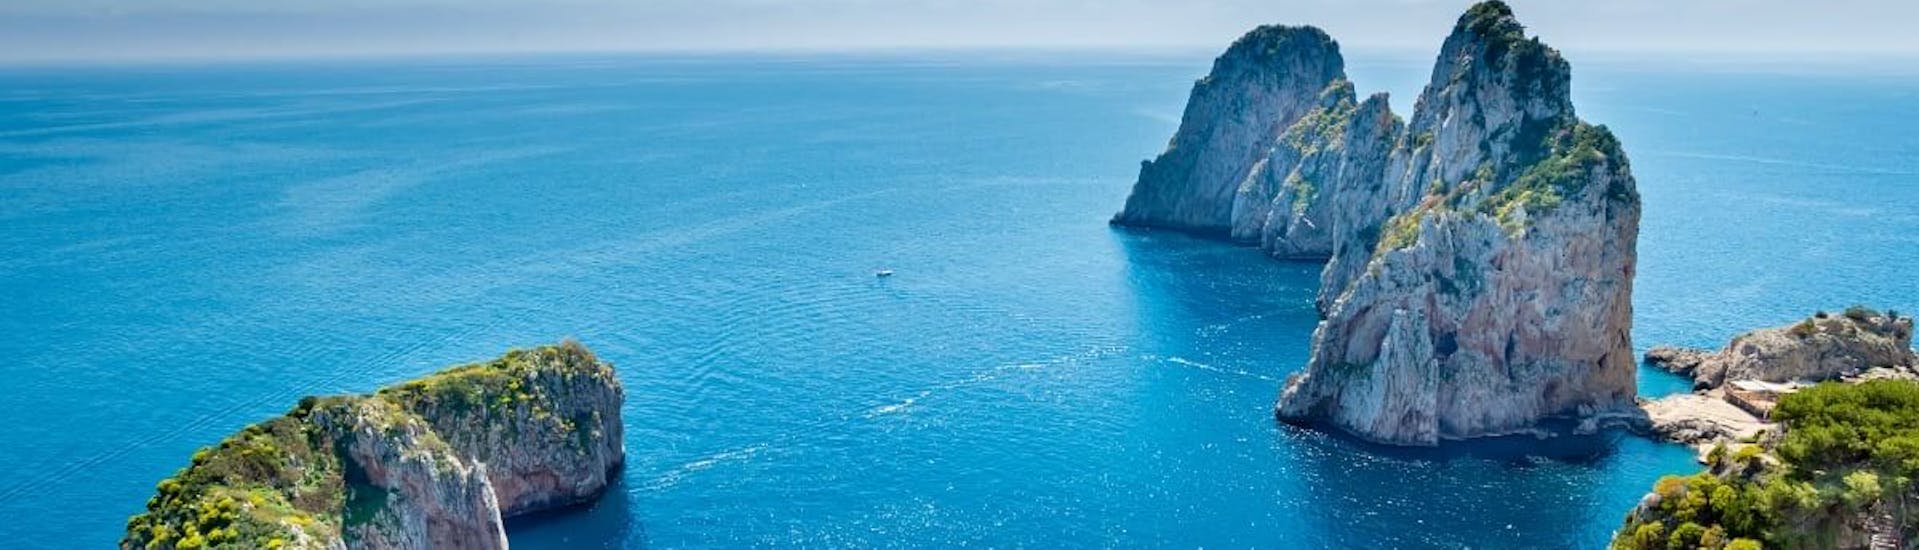 Las aguas cristalinas de Sorrento, donde tendrá el viaje en barco desde Pozzuoli a Capri y Sorrento con almuerzo.